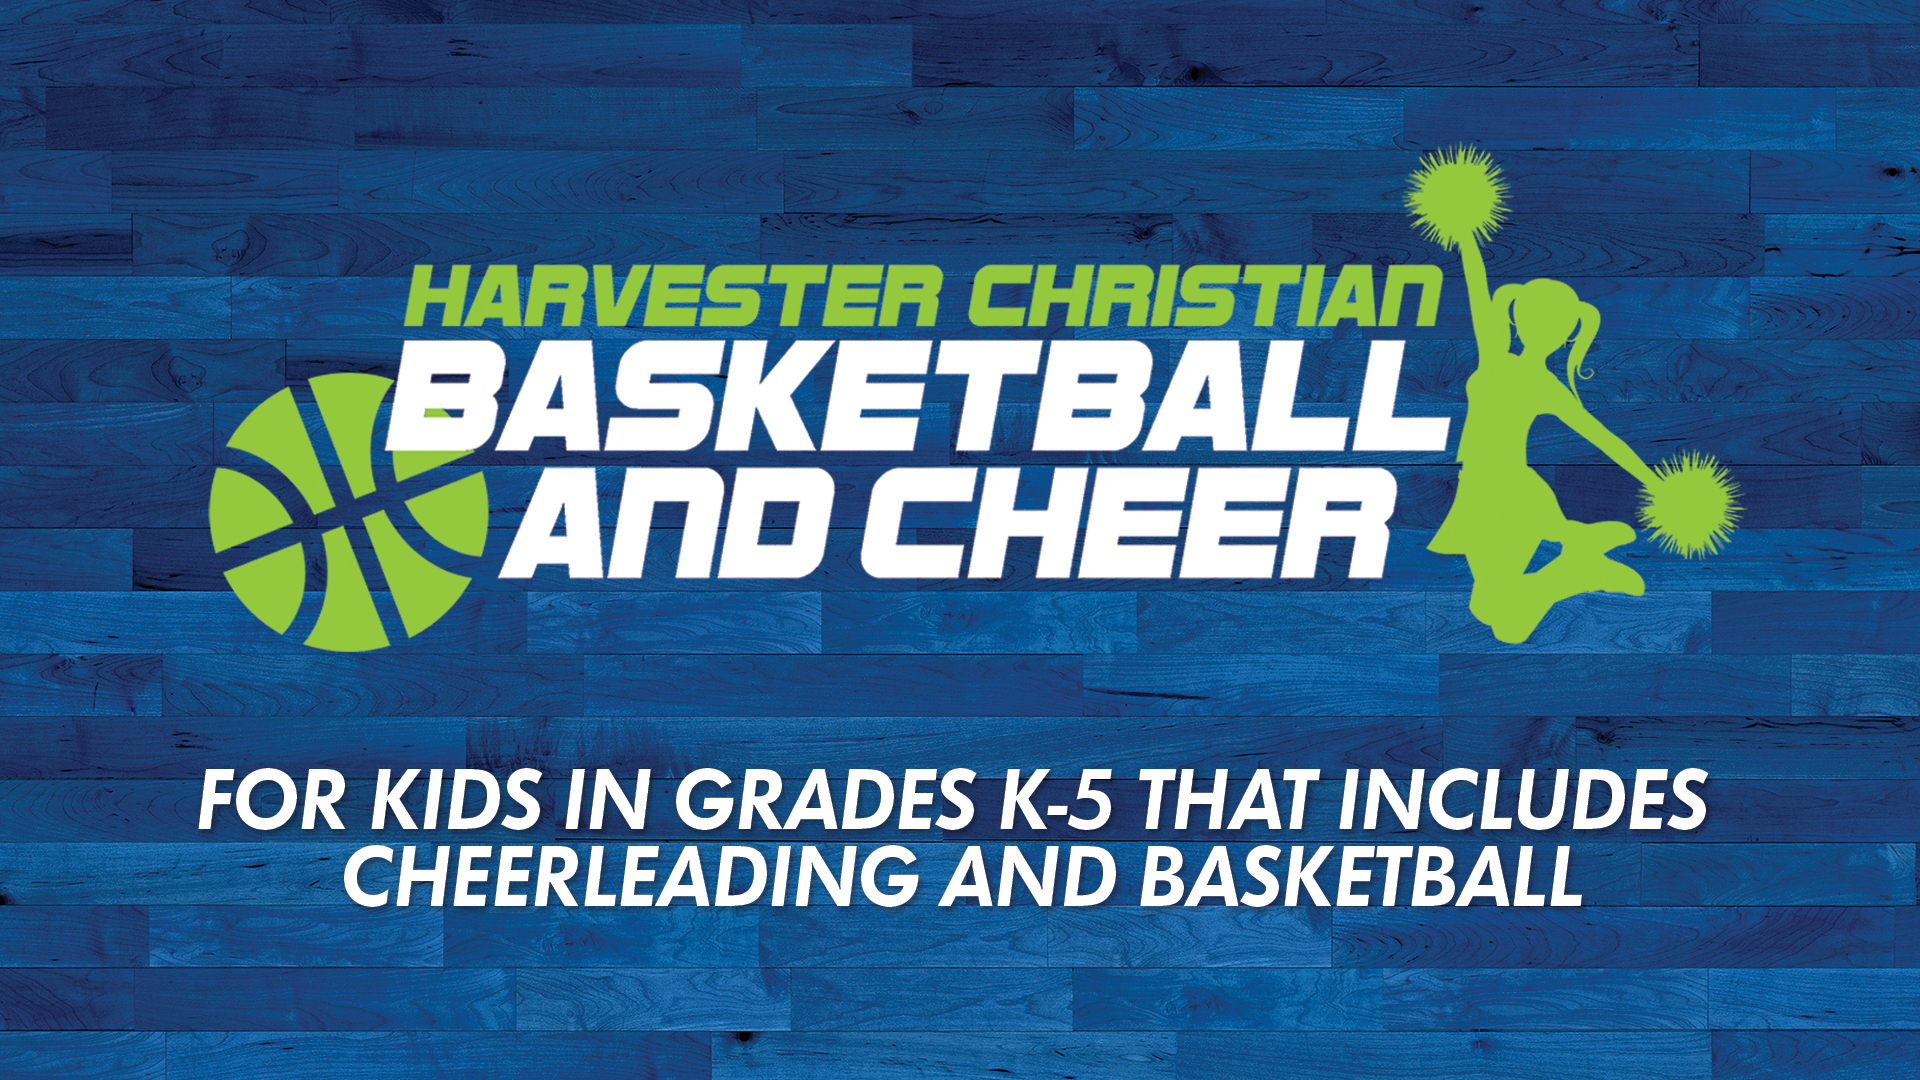 Harvester Christian Basketball & Cheer 2019 - 2020